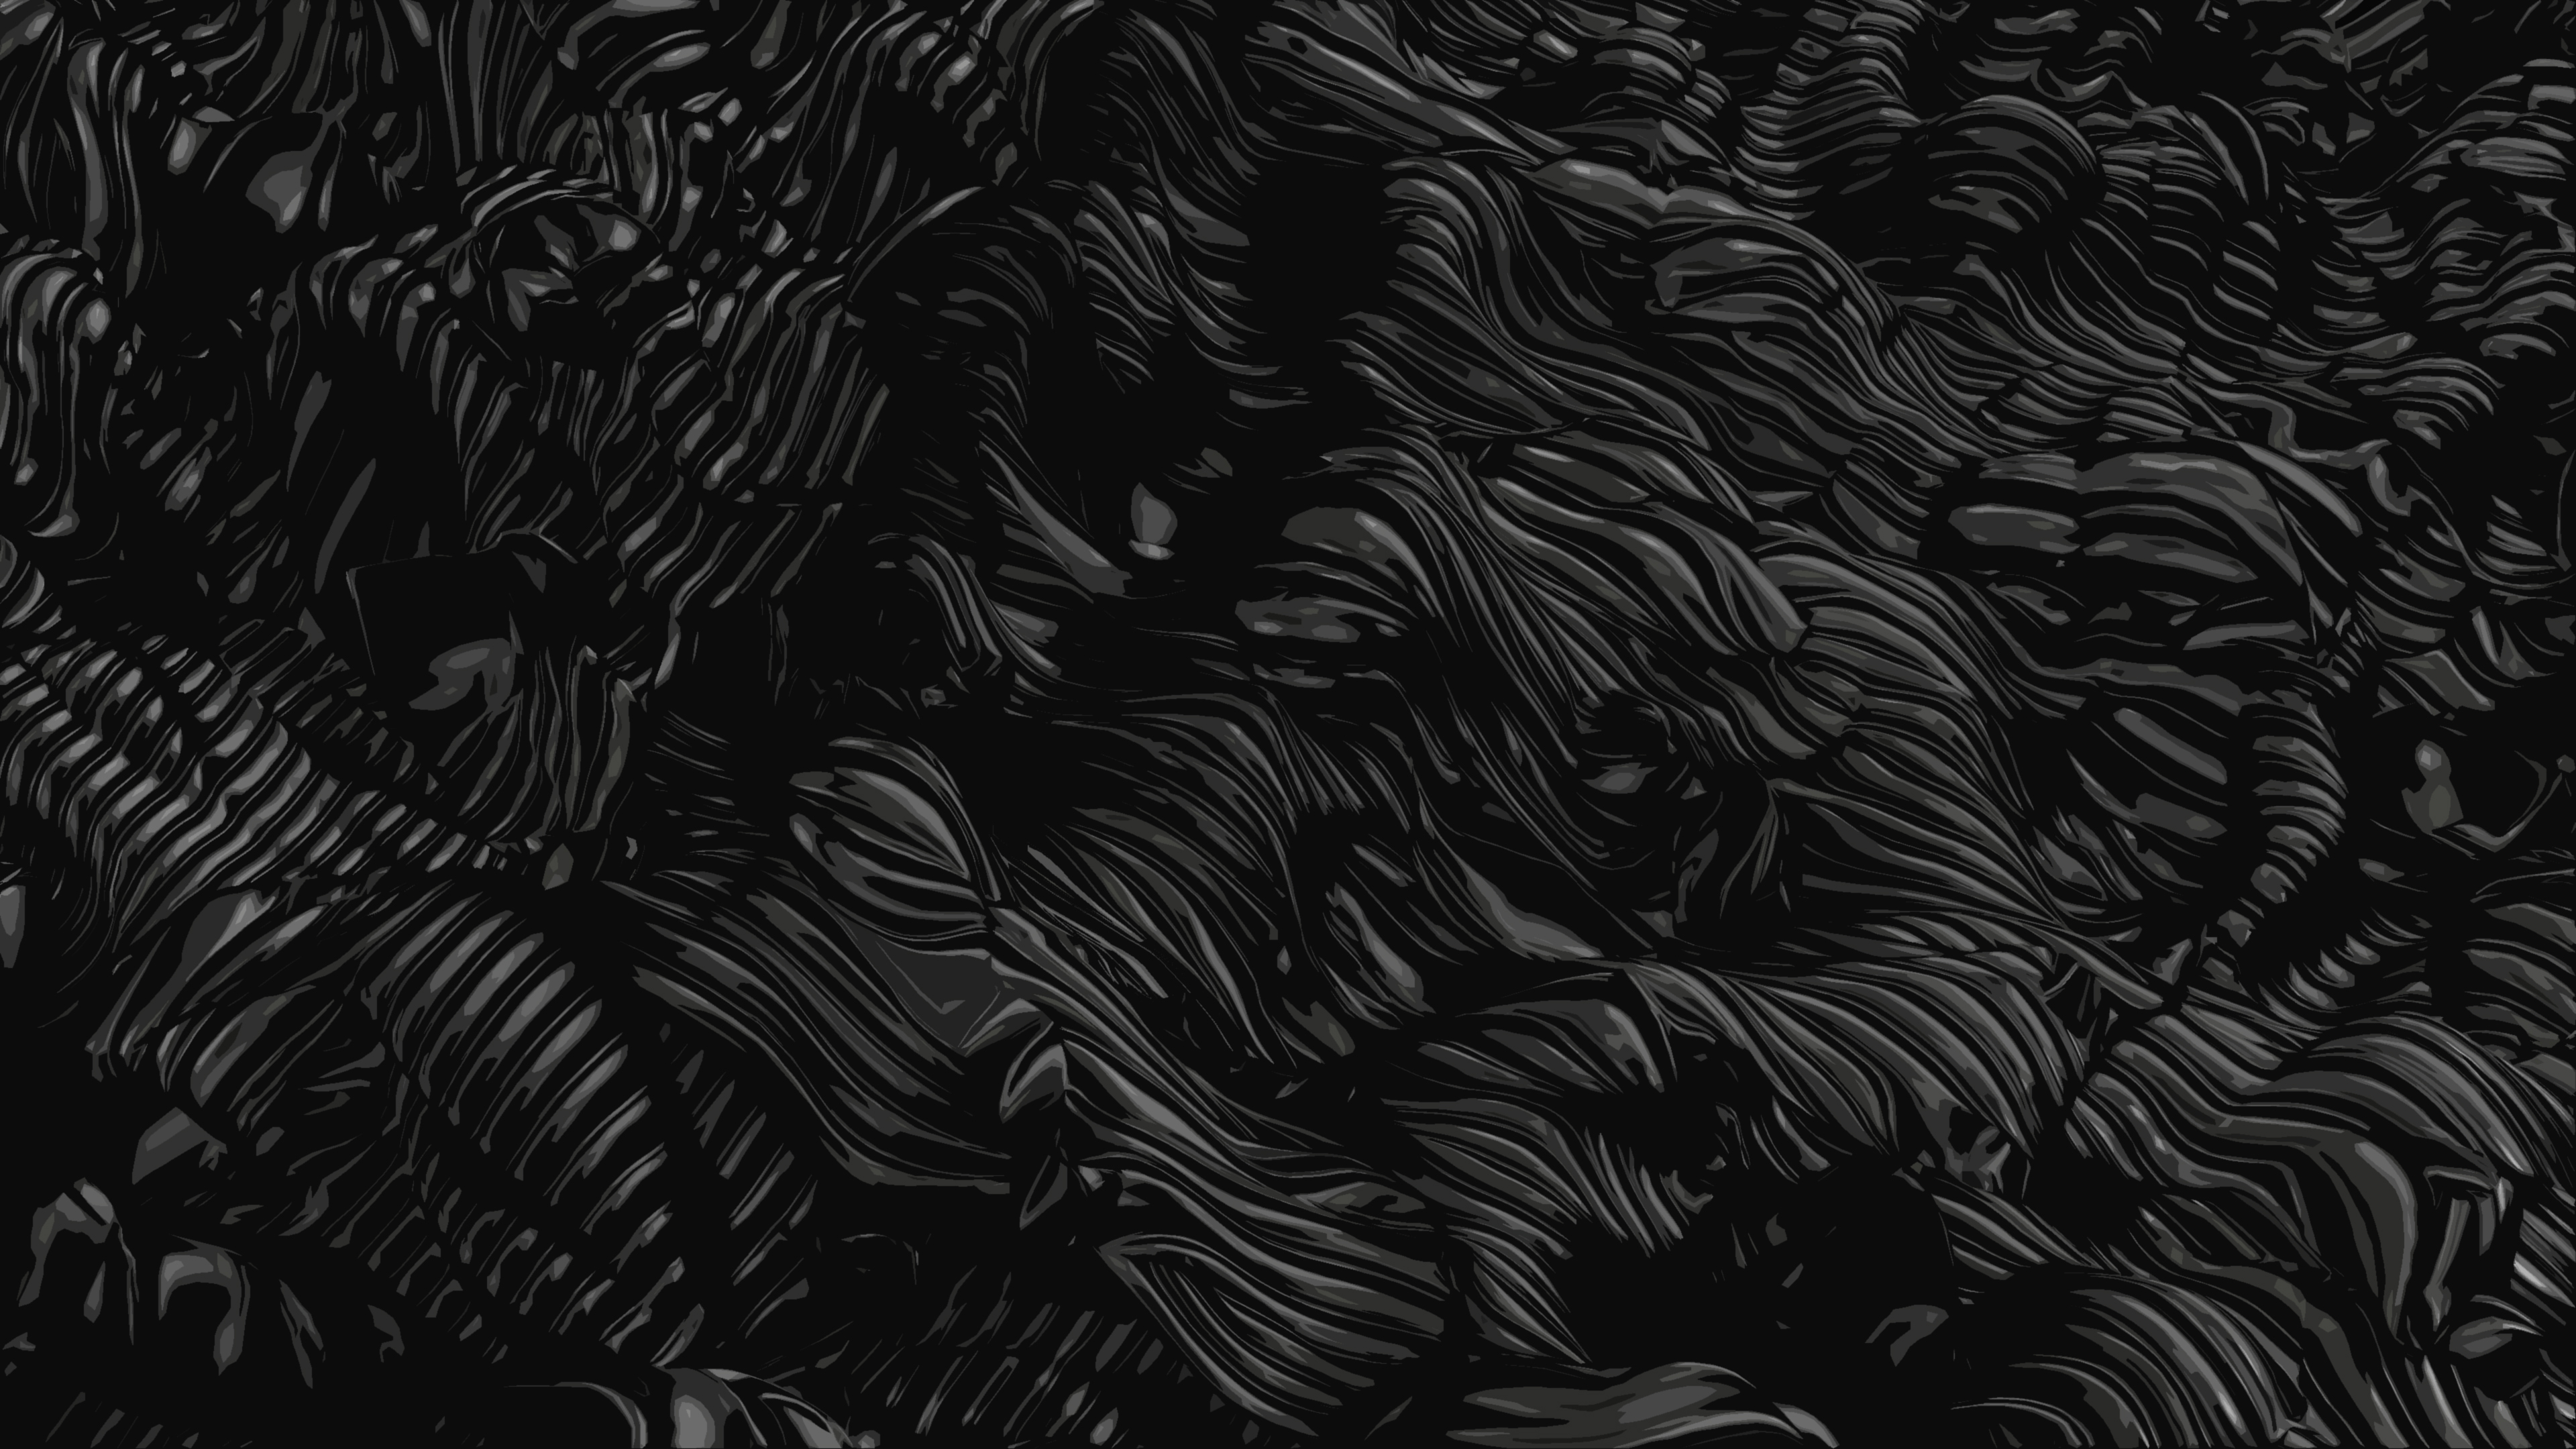  Black  Abstract Dark Poster Oil HD  4K  Wallpaper 